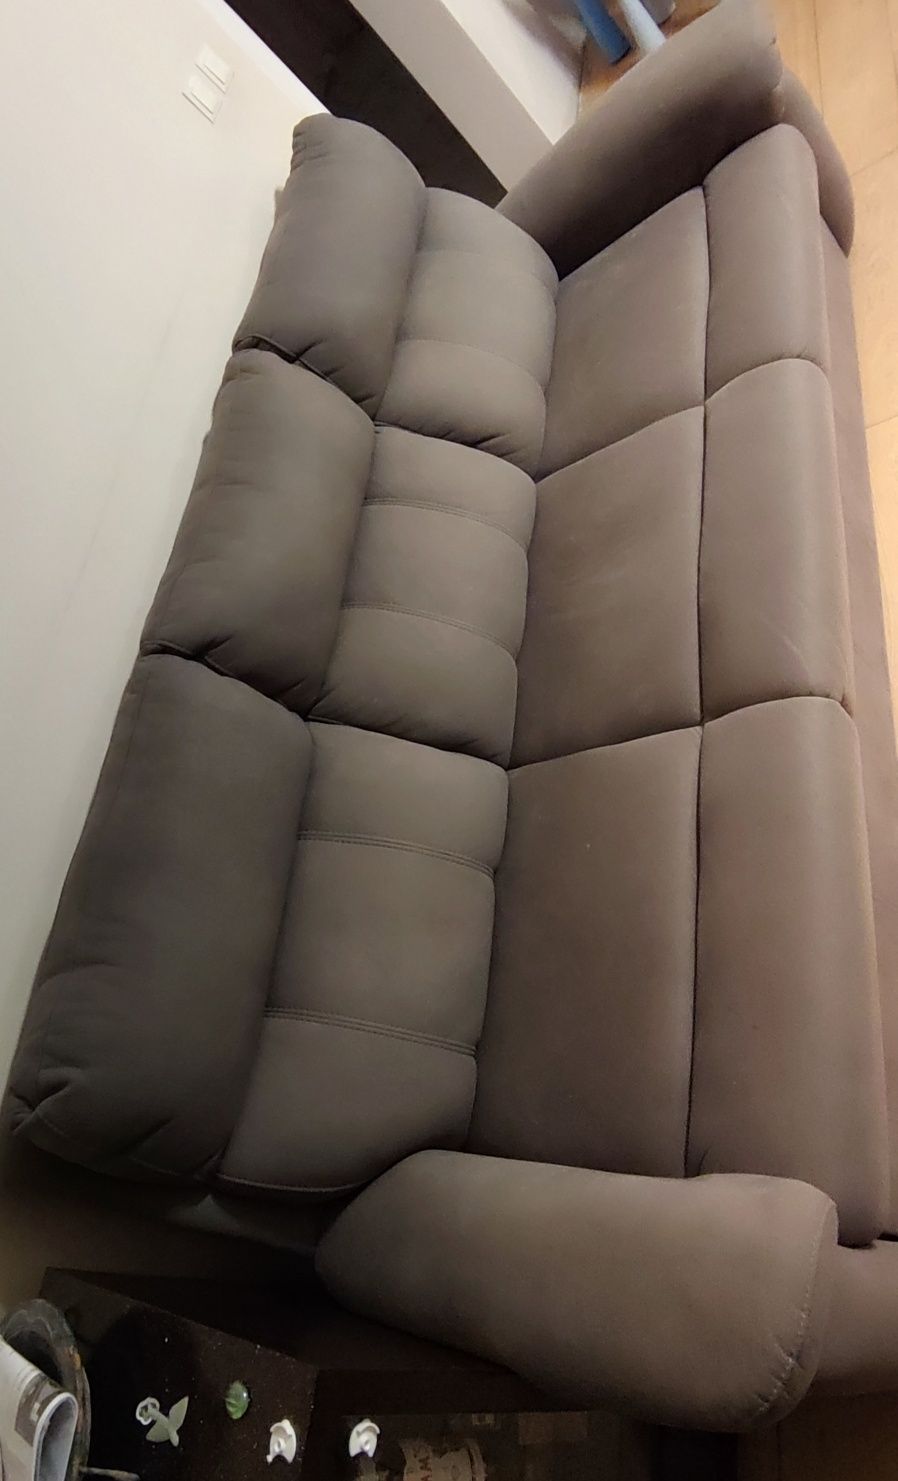 Sofa / kanapą z funkcją spania